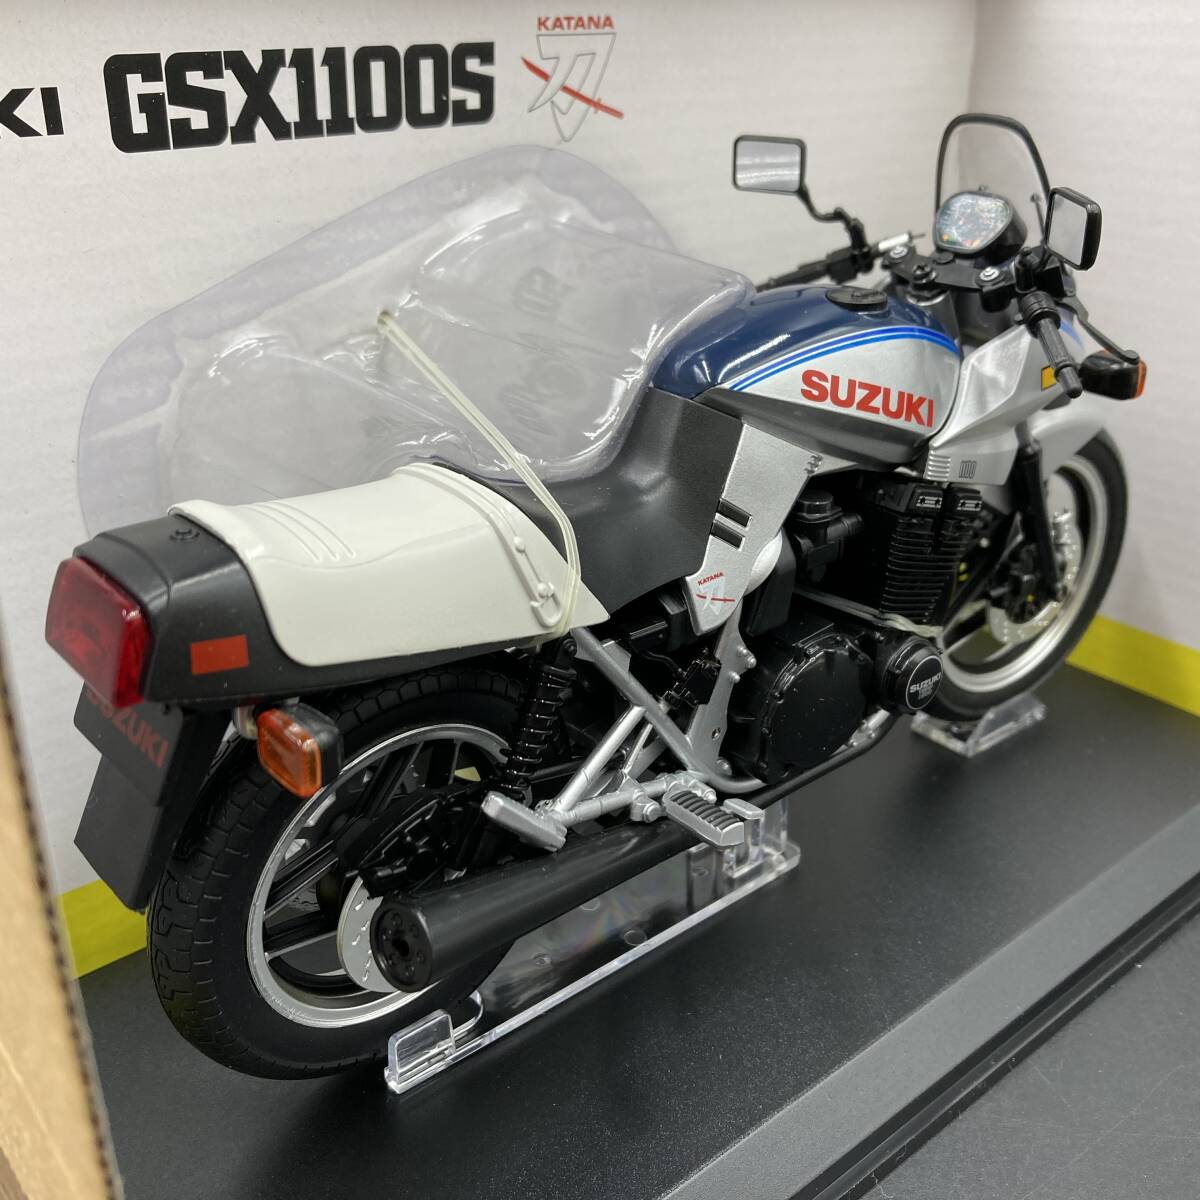 BQ3005 アオシマ 1/12 完成品 バイクシリーズ SUZUKI GSX1100S 刀 ミニカー_画像4